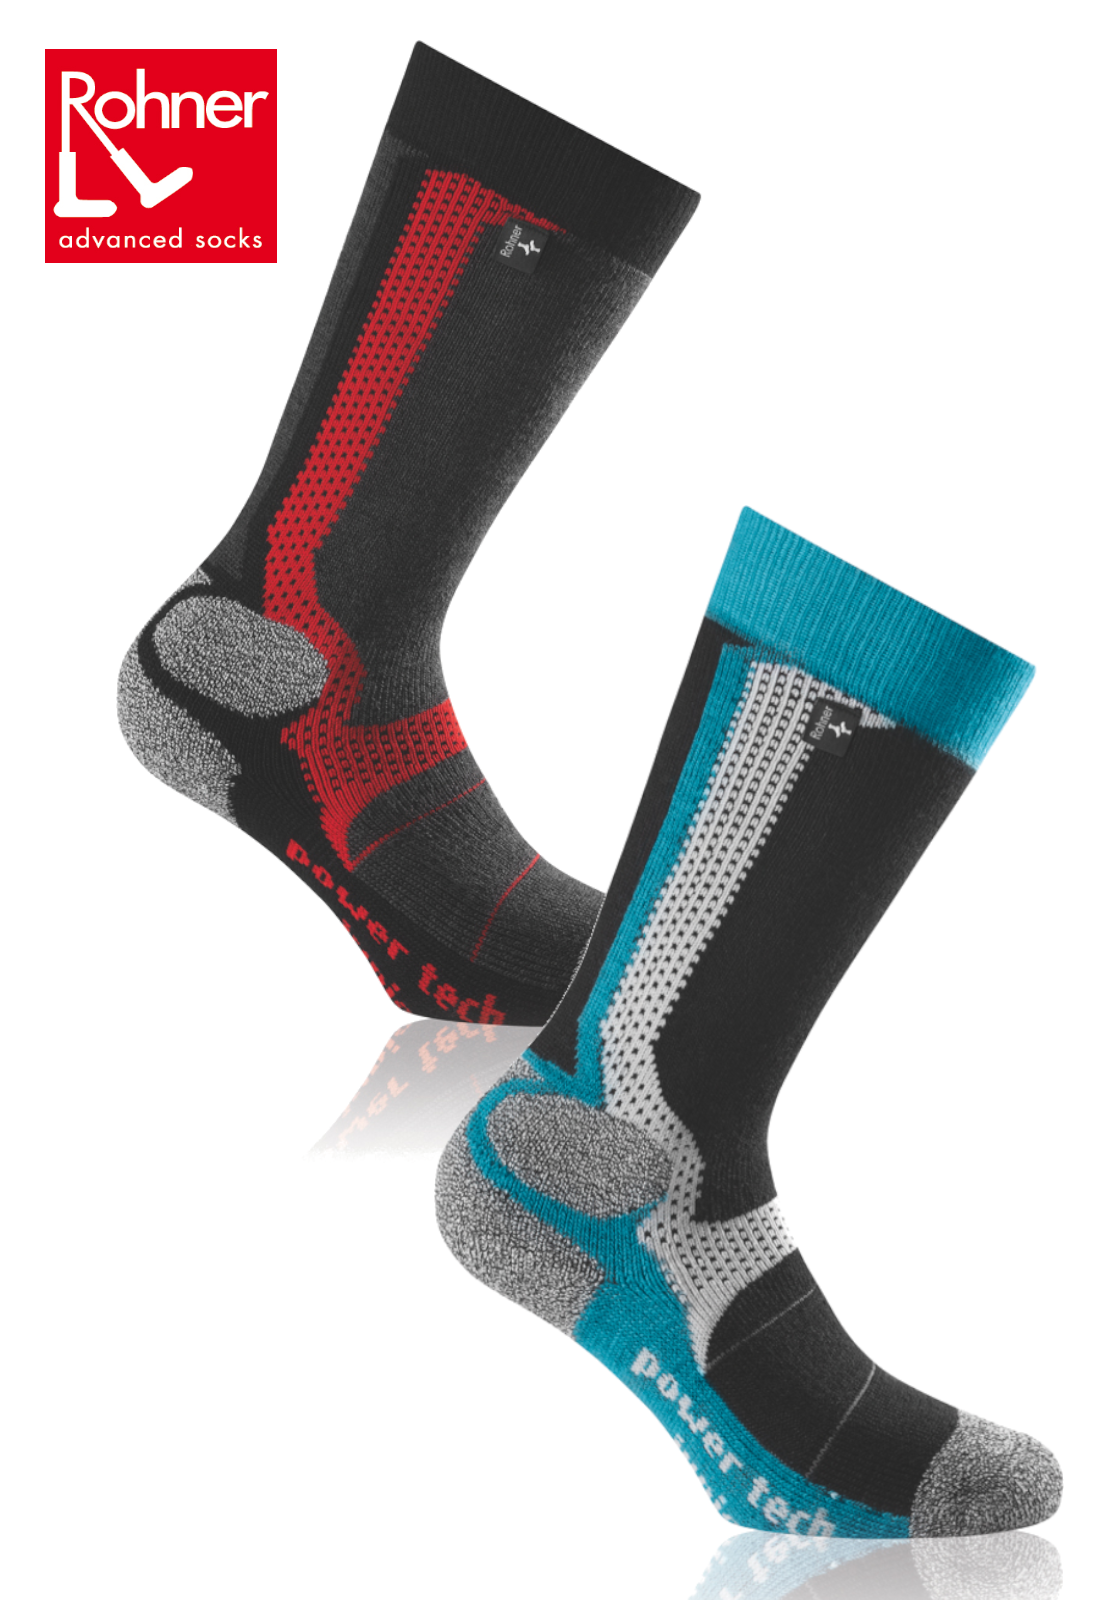 ROHNER Ski-Socken/Sport-Socken <br>power tech junior <br> Gr. 27-30, 31-34, 35-38 <br> warm, Klima-ausgleichend, Lüftungskanäle<br>kniehoch, anatomische Passform, Knöchelschutz<br>mit Schurwoll-Anteil